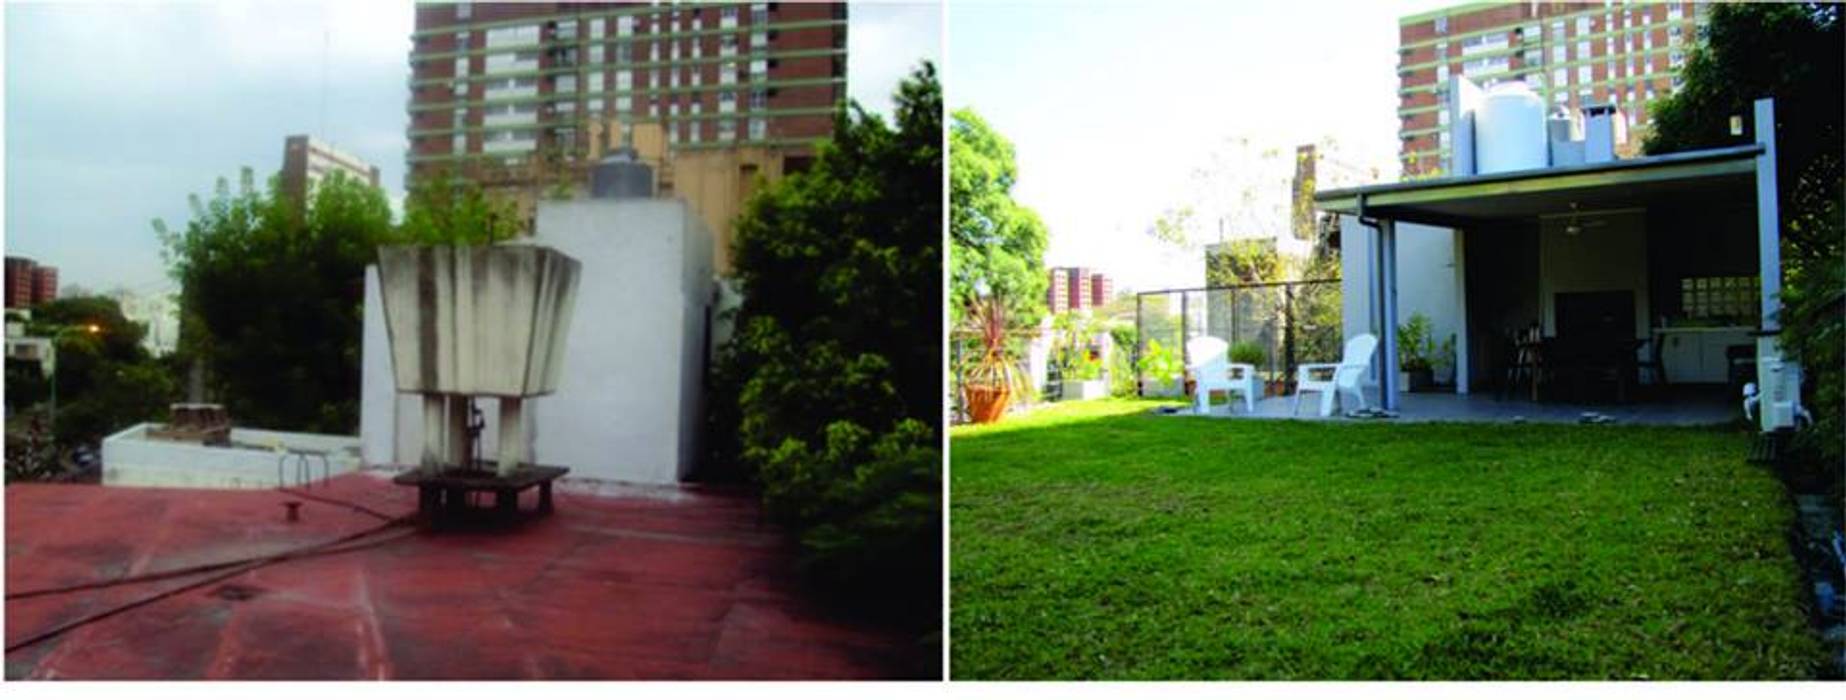 Terraza jardín con vivienda..., Verde Urbano Arquitectura Verde Urbano Arquitectura